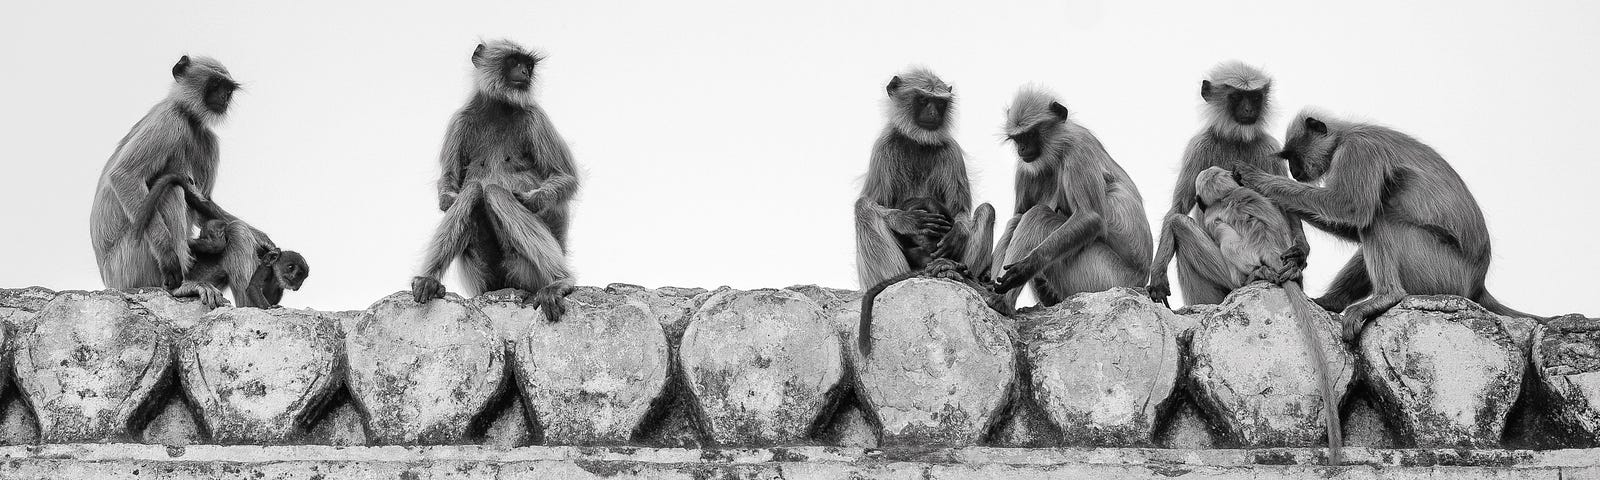 Hanuman monkeys tending to themselves, in Hampi, India.